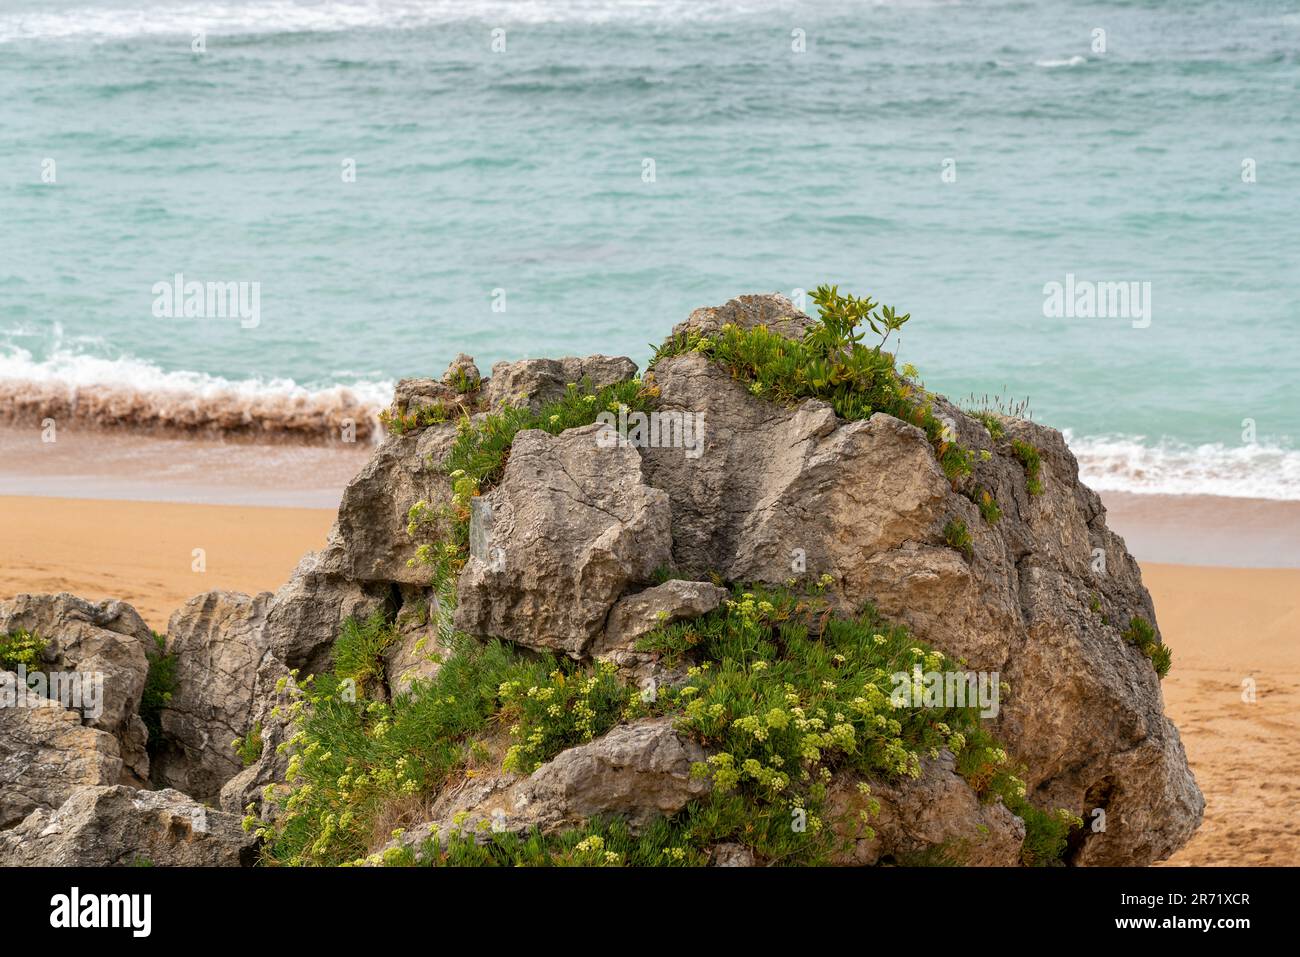 Spektakuläre Landschaft in Kantabrien - Spanien. Hohe Klippen mit grüner Vegetation. Atlantik mit spektakulären Wasserfarben. Stockfoto